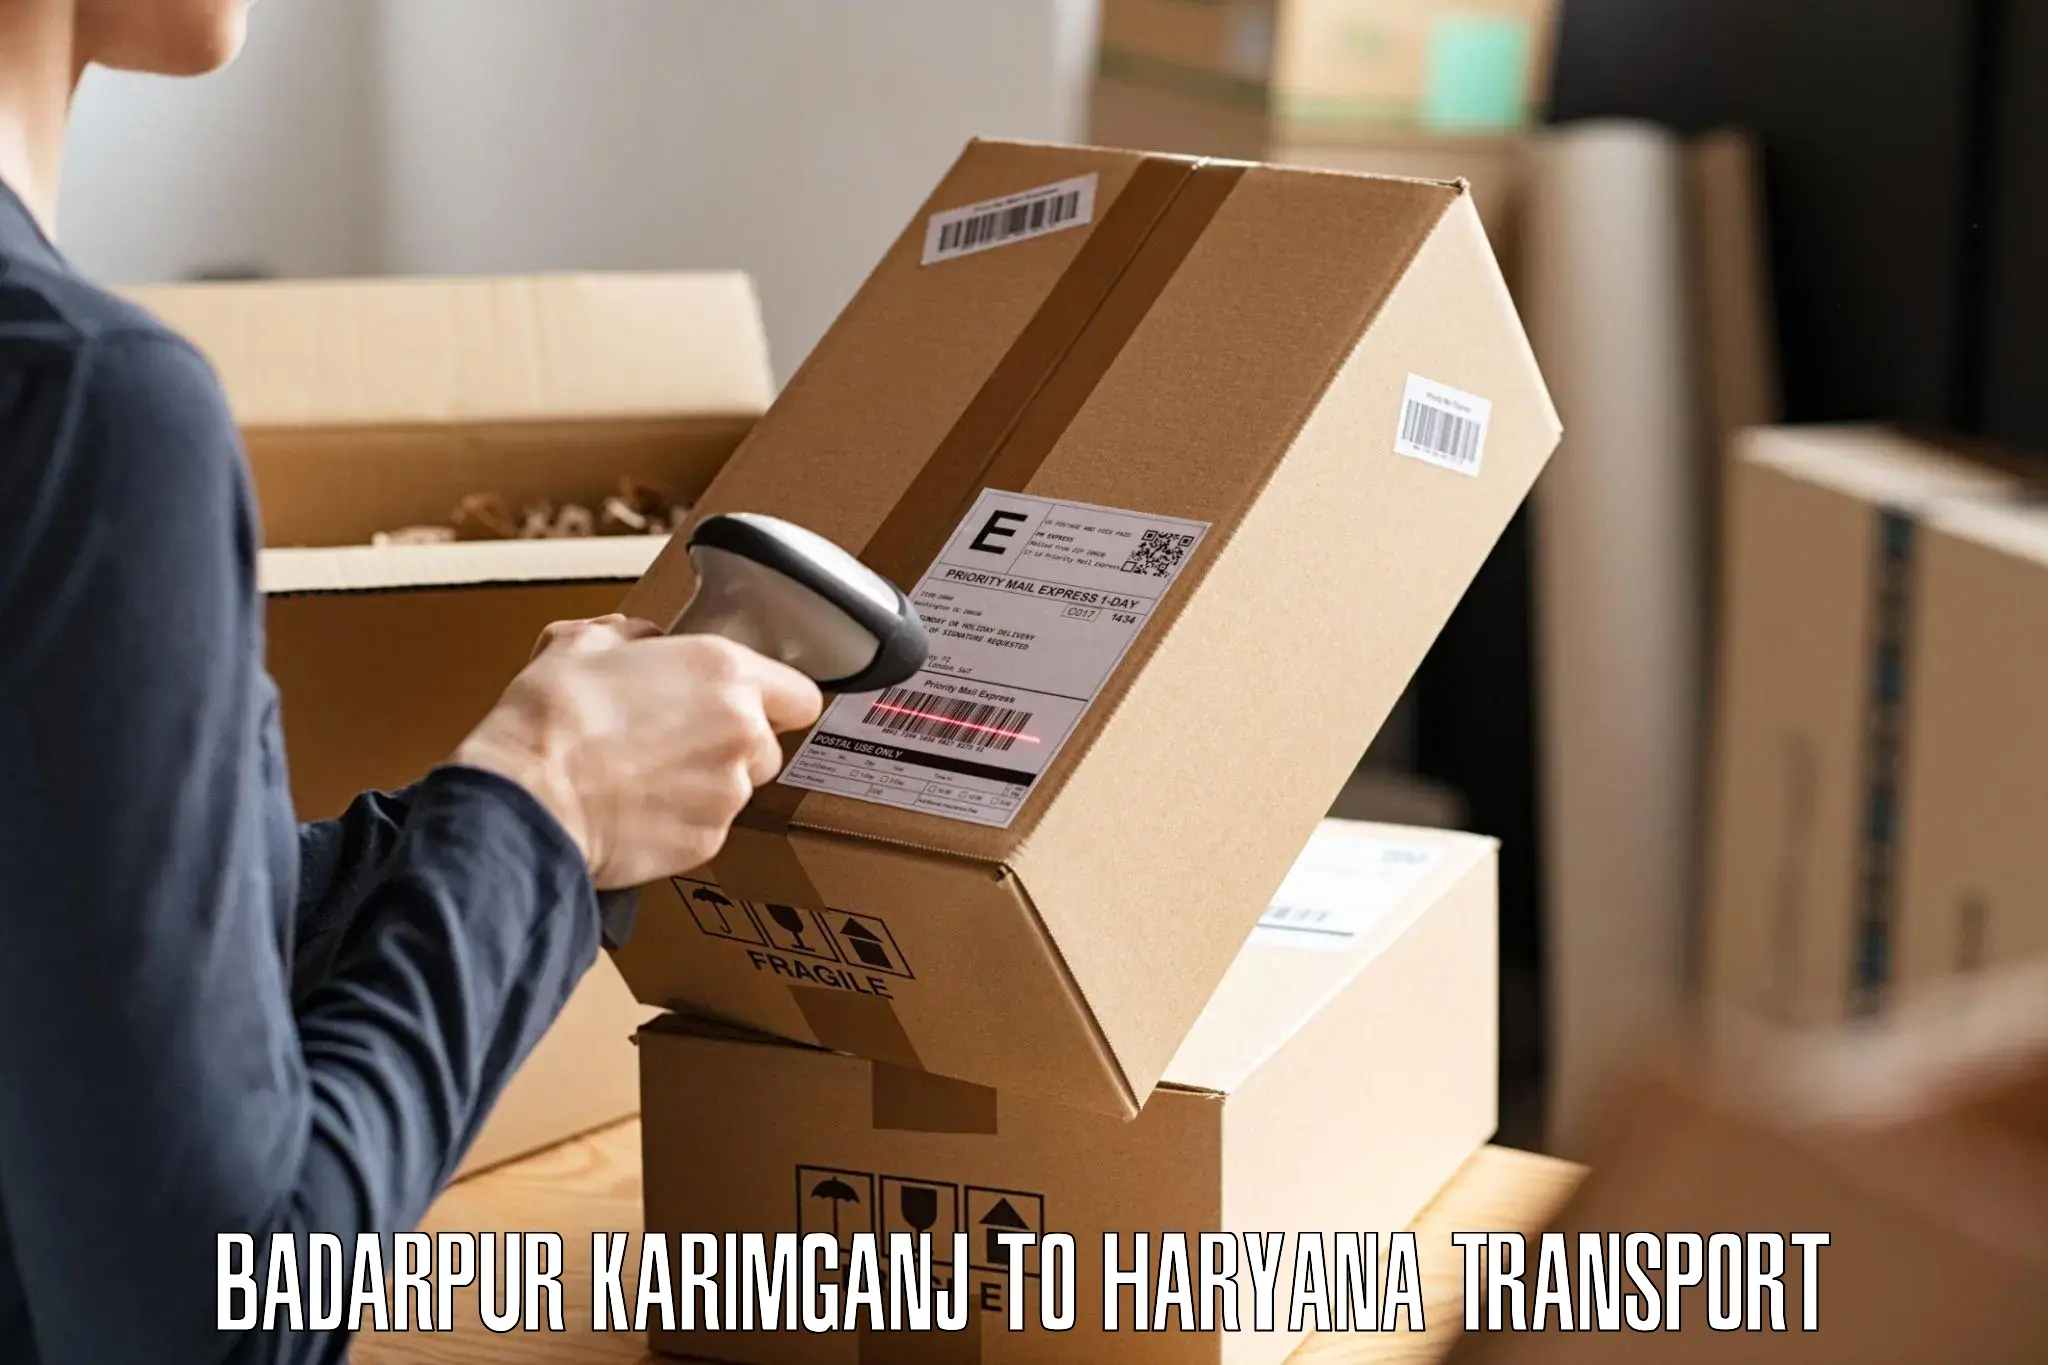 Shipping partner Badarpur Karimganj to Bilaspur Haryana